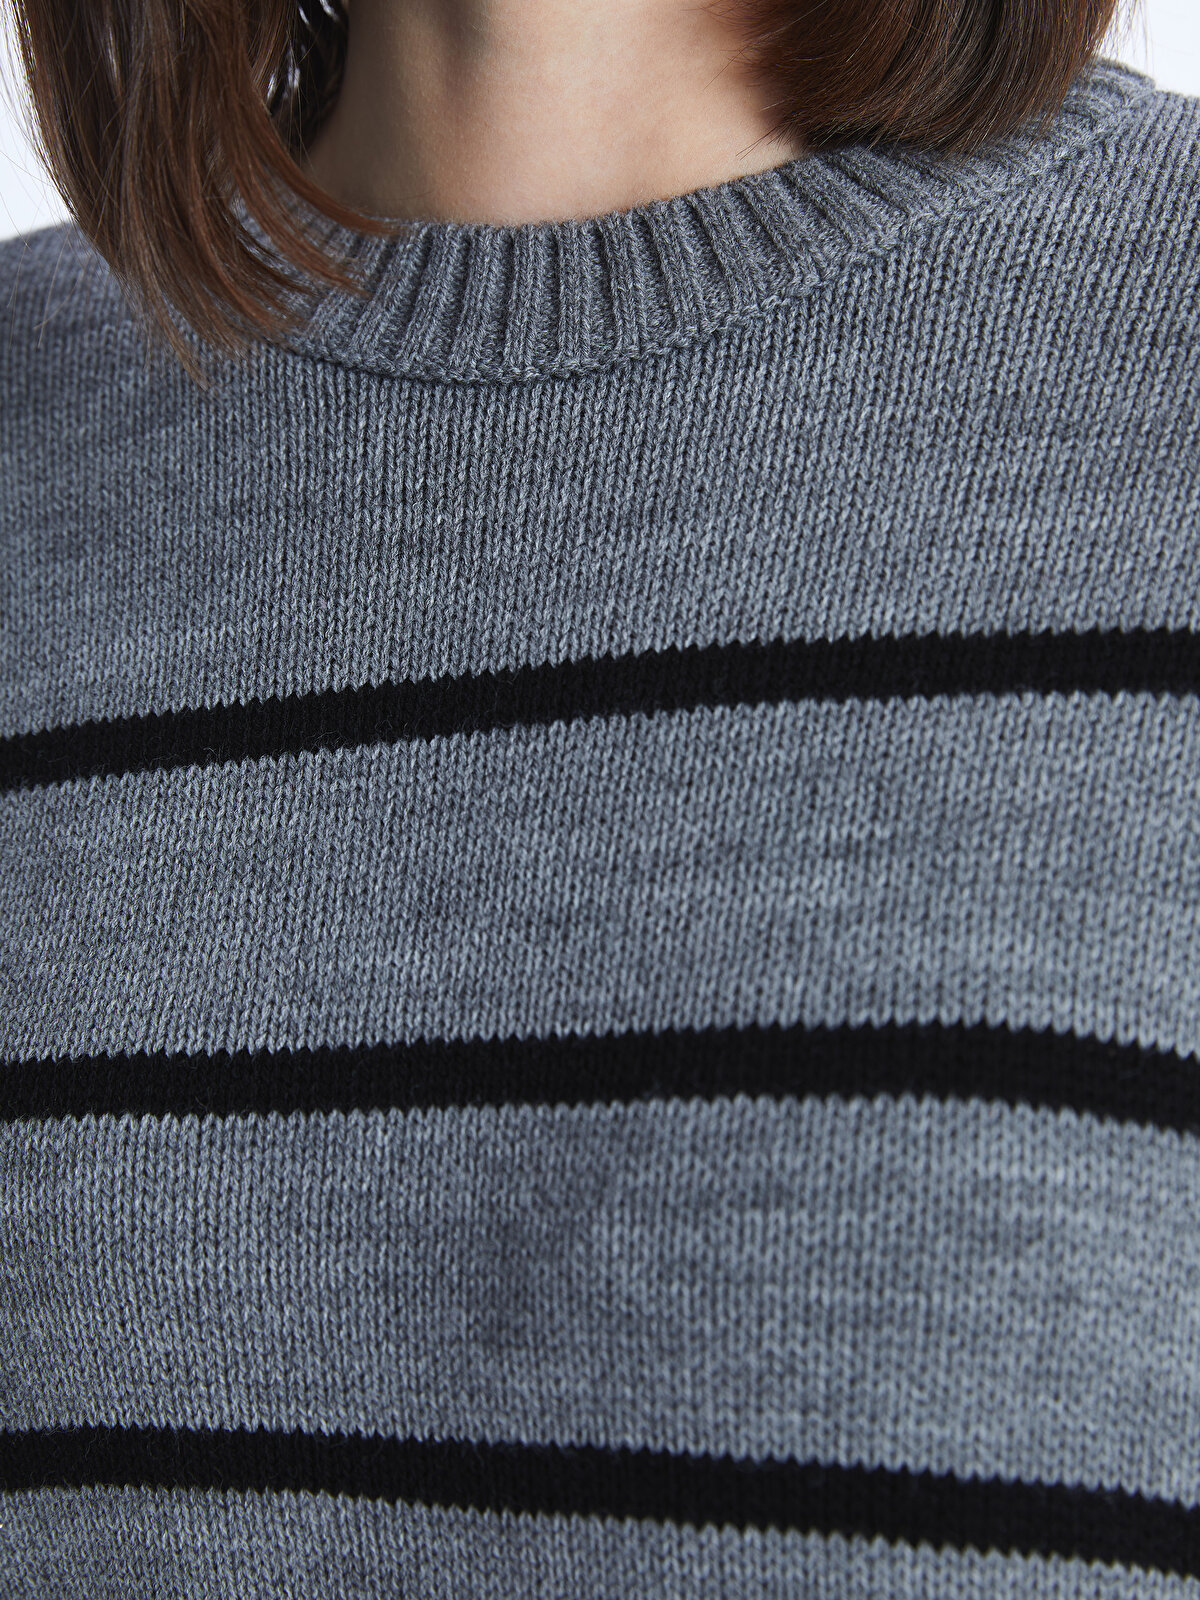 Crew Neck Striped Long Sleeve Oversize Women's Knitwear Sweater 